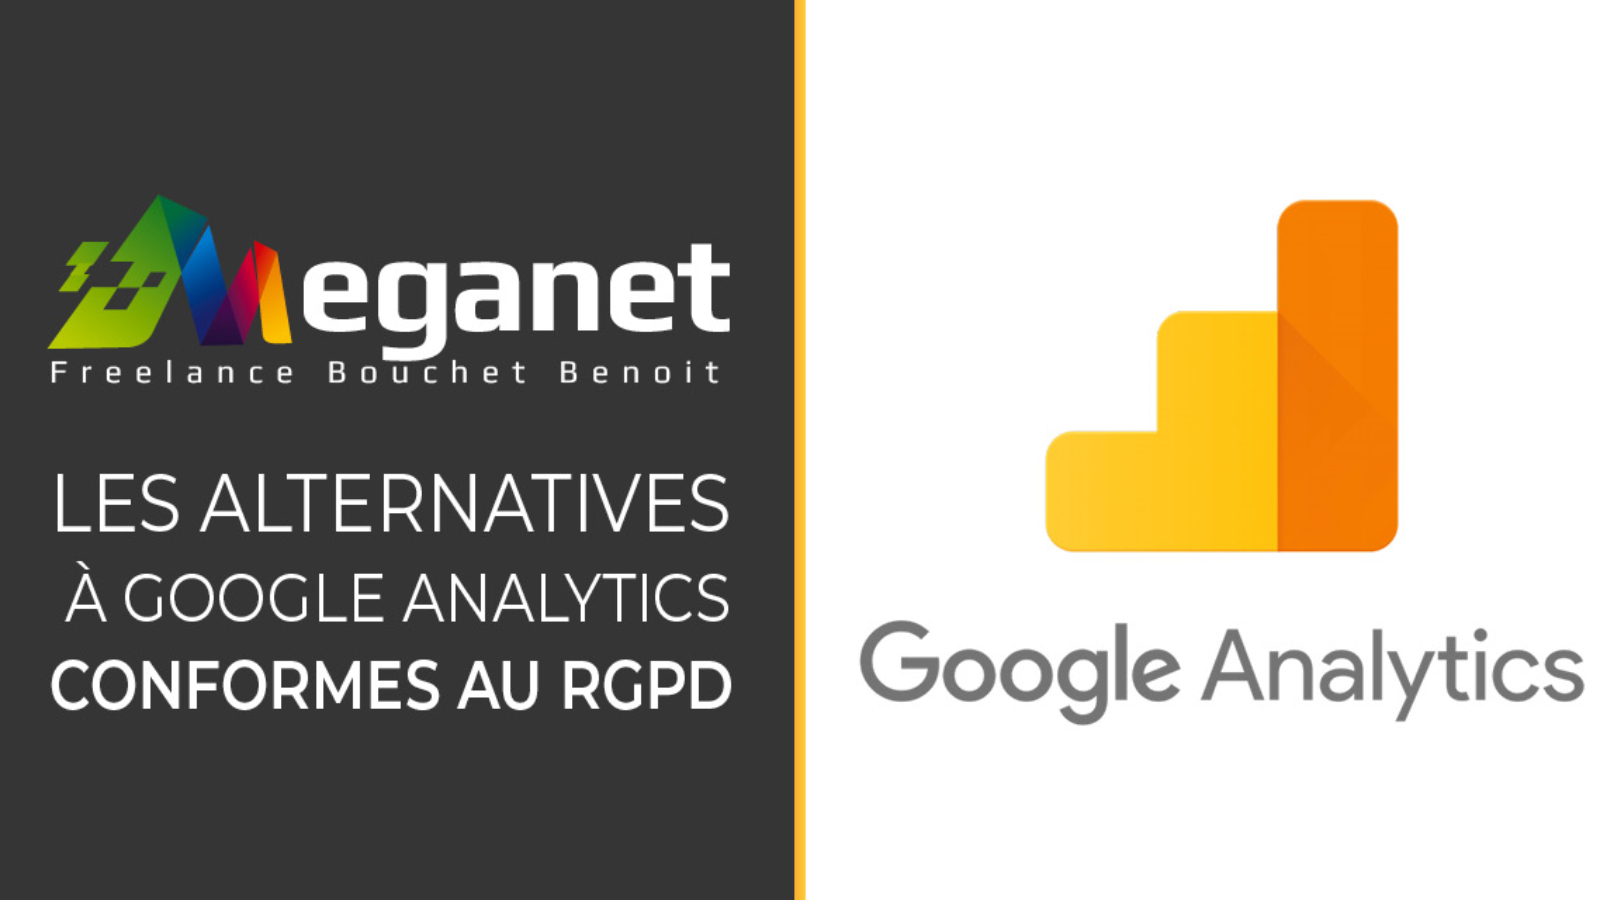 Les meilleures alternatives à Google Analytics conformes au RGPD